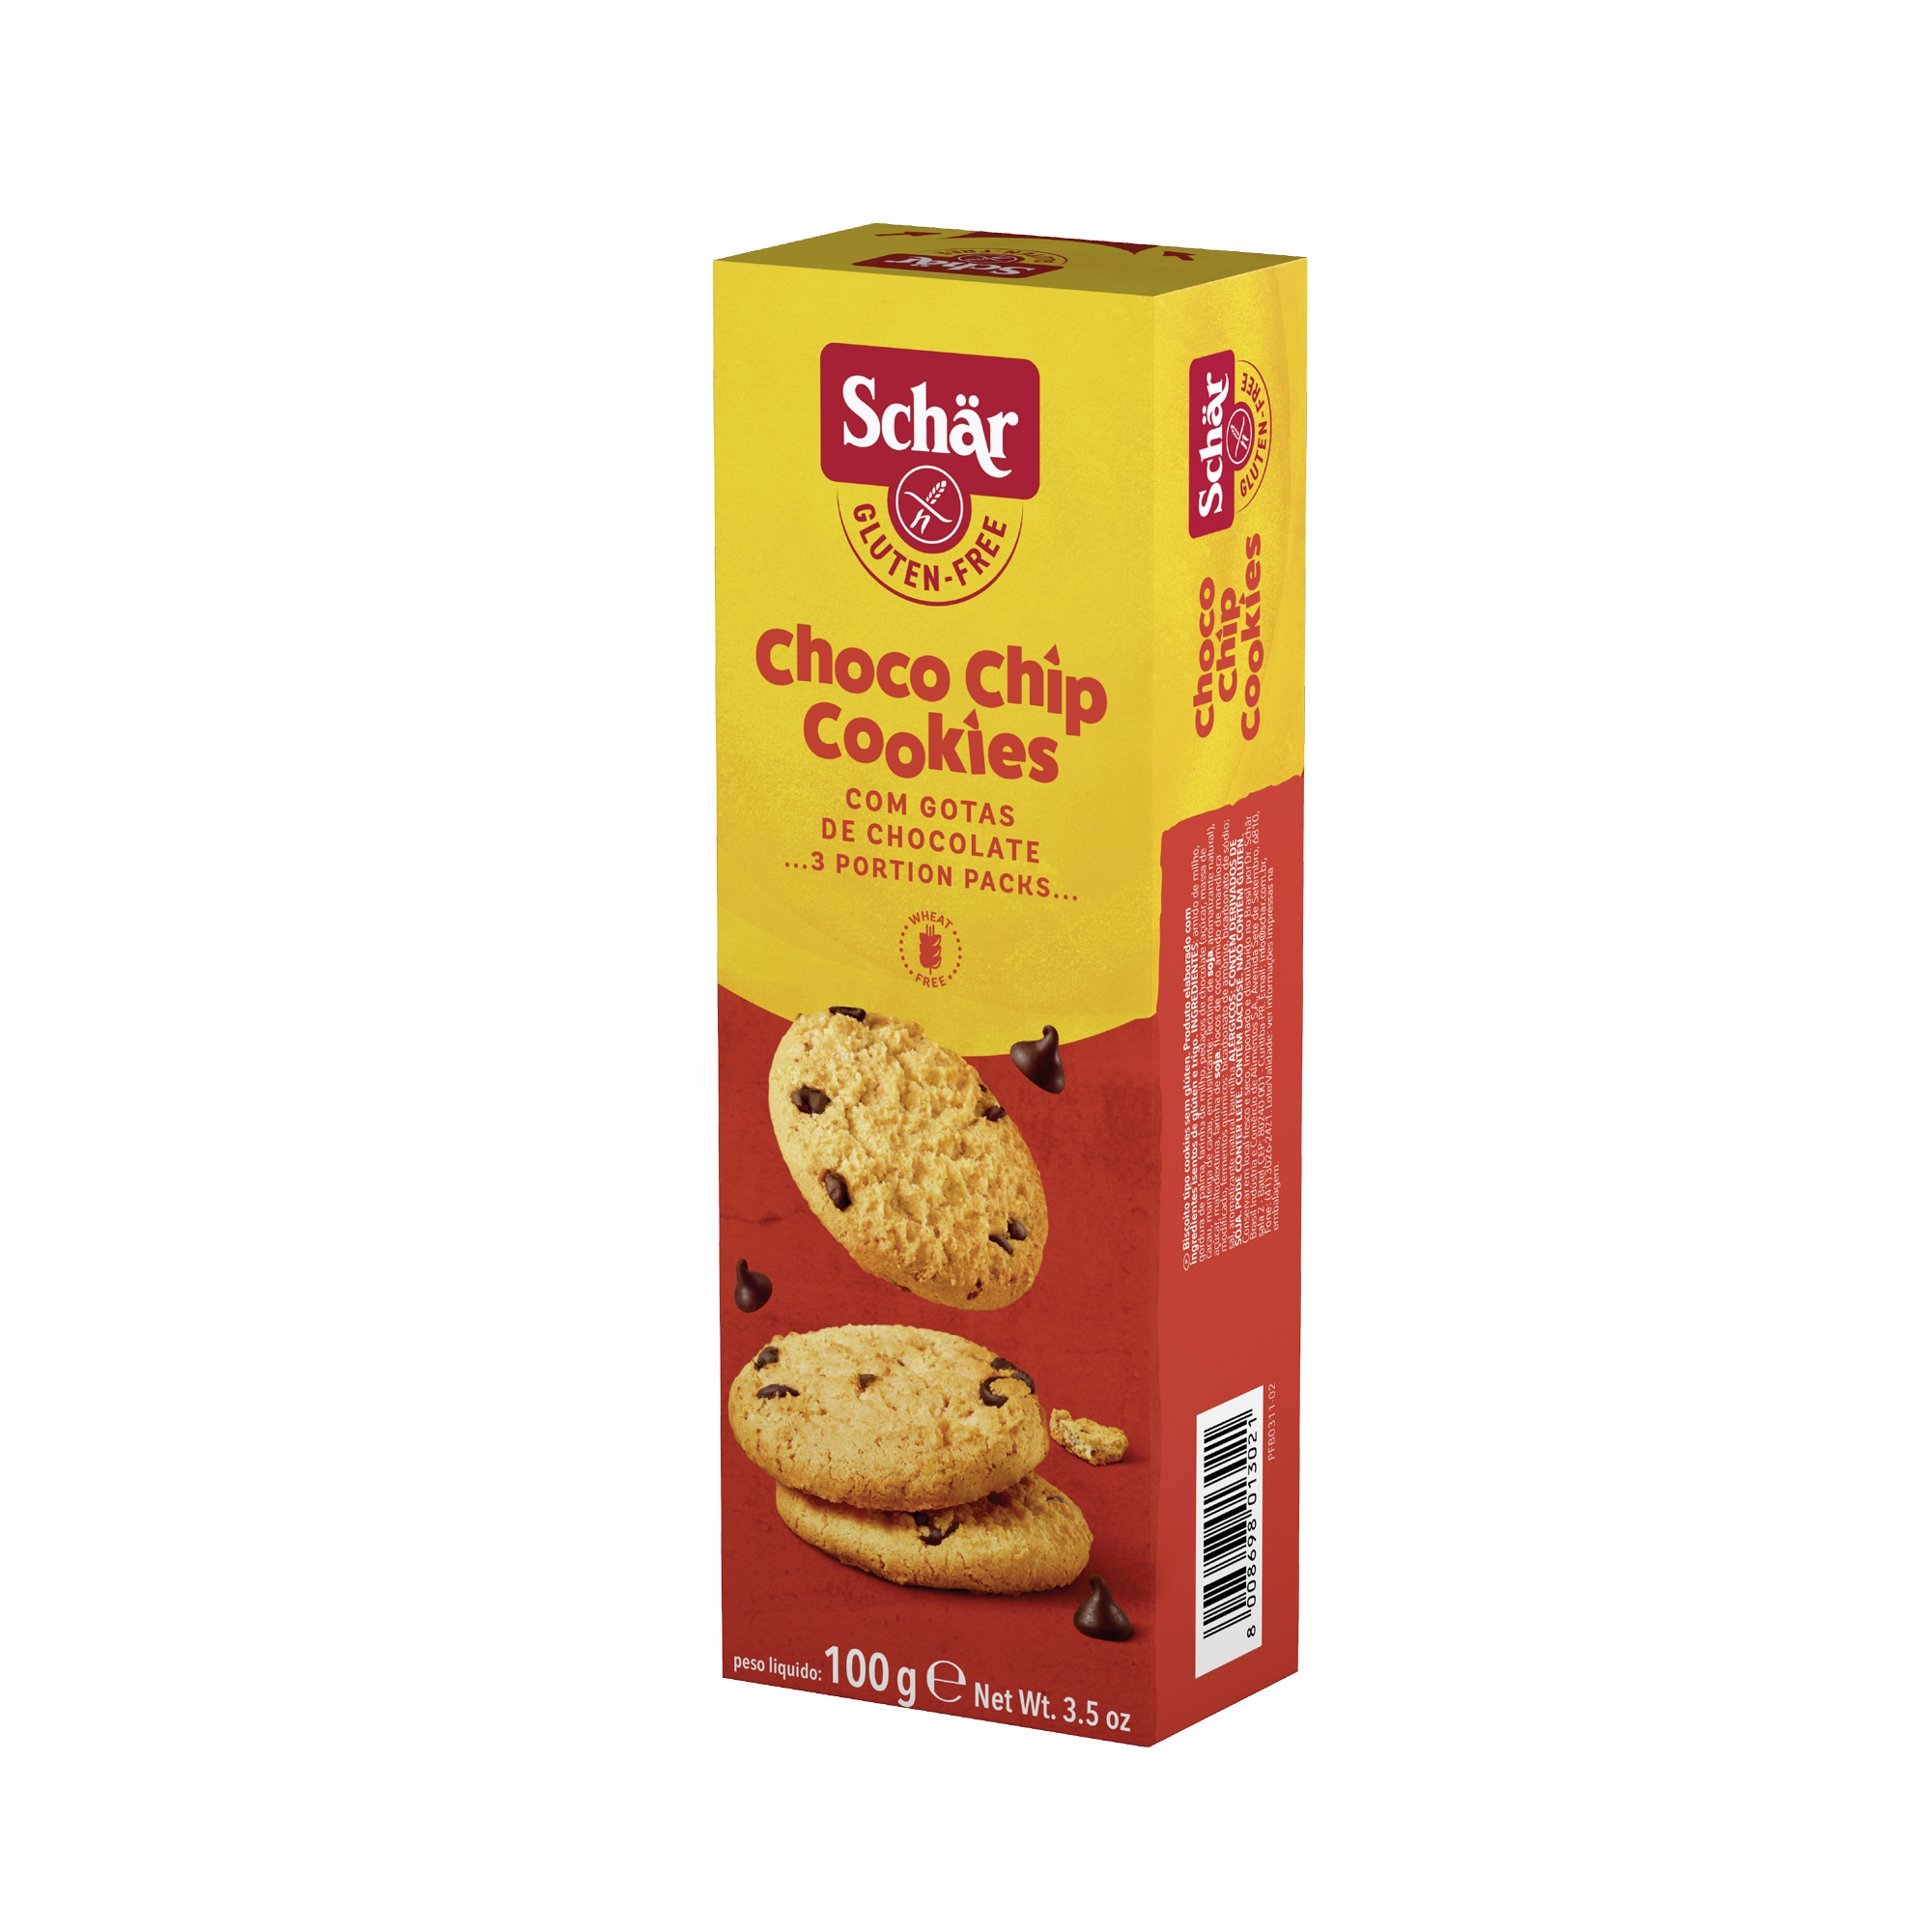 SCHÄR Choco Chip Cookies, 100g